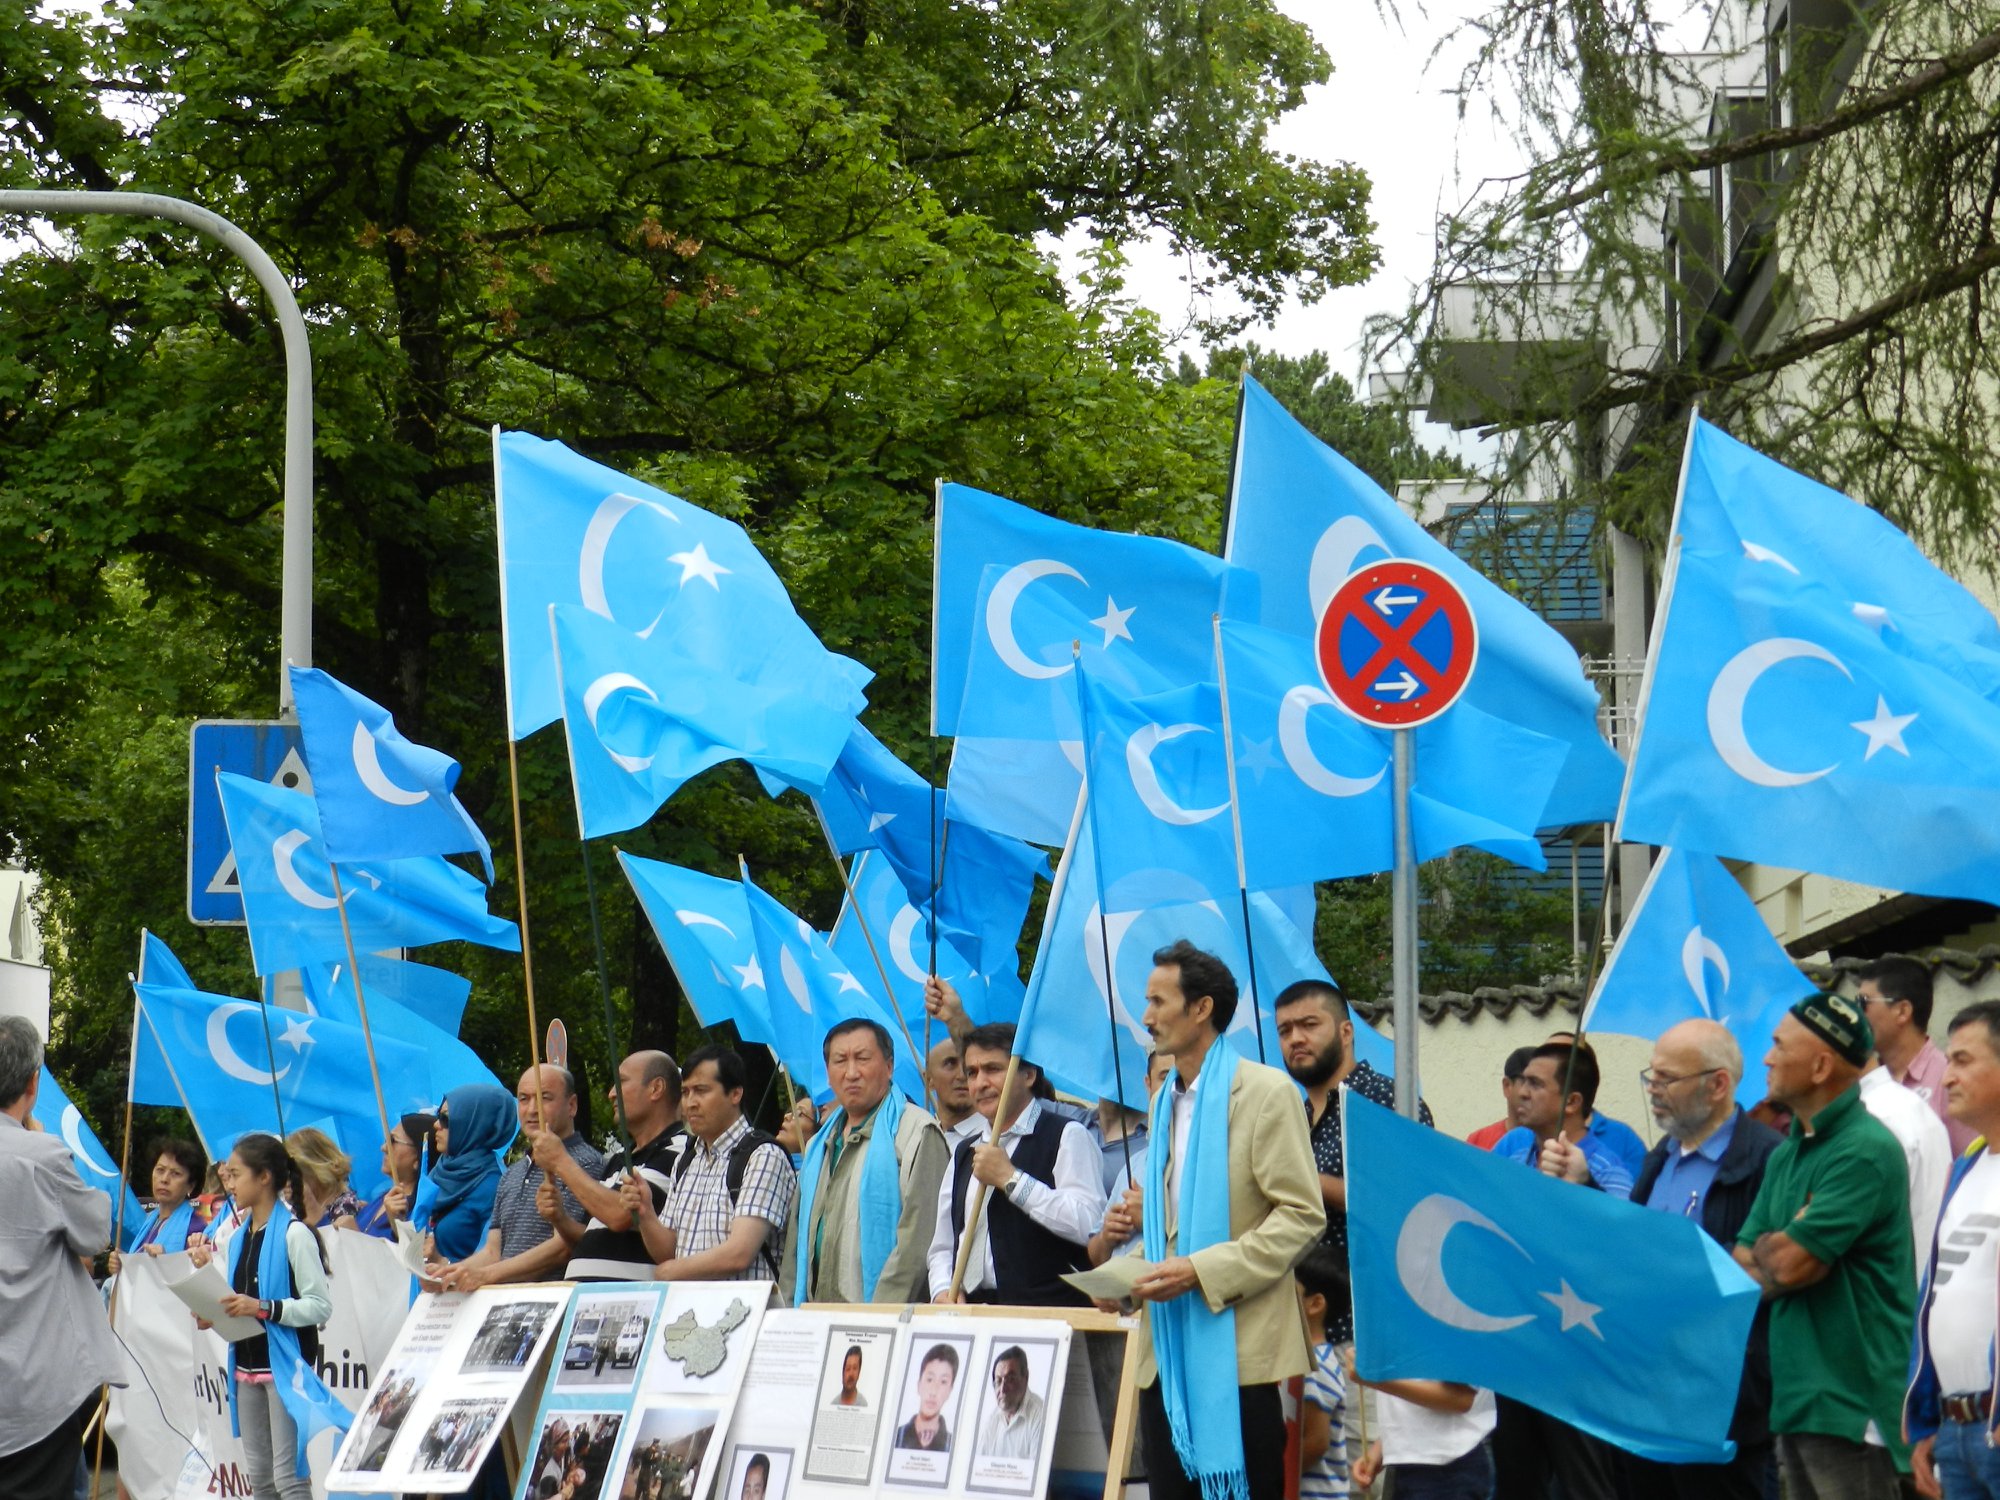 Uyghurs in the diaspora commemorated the July 5th, 2009 Urumqi Massacre